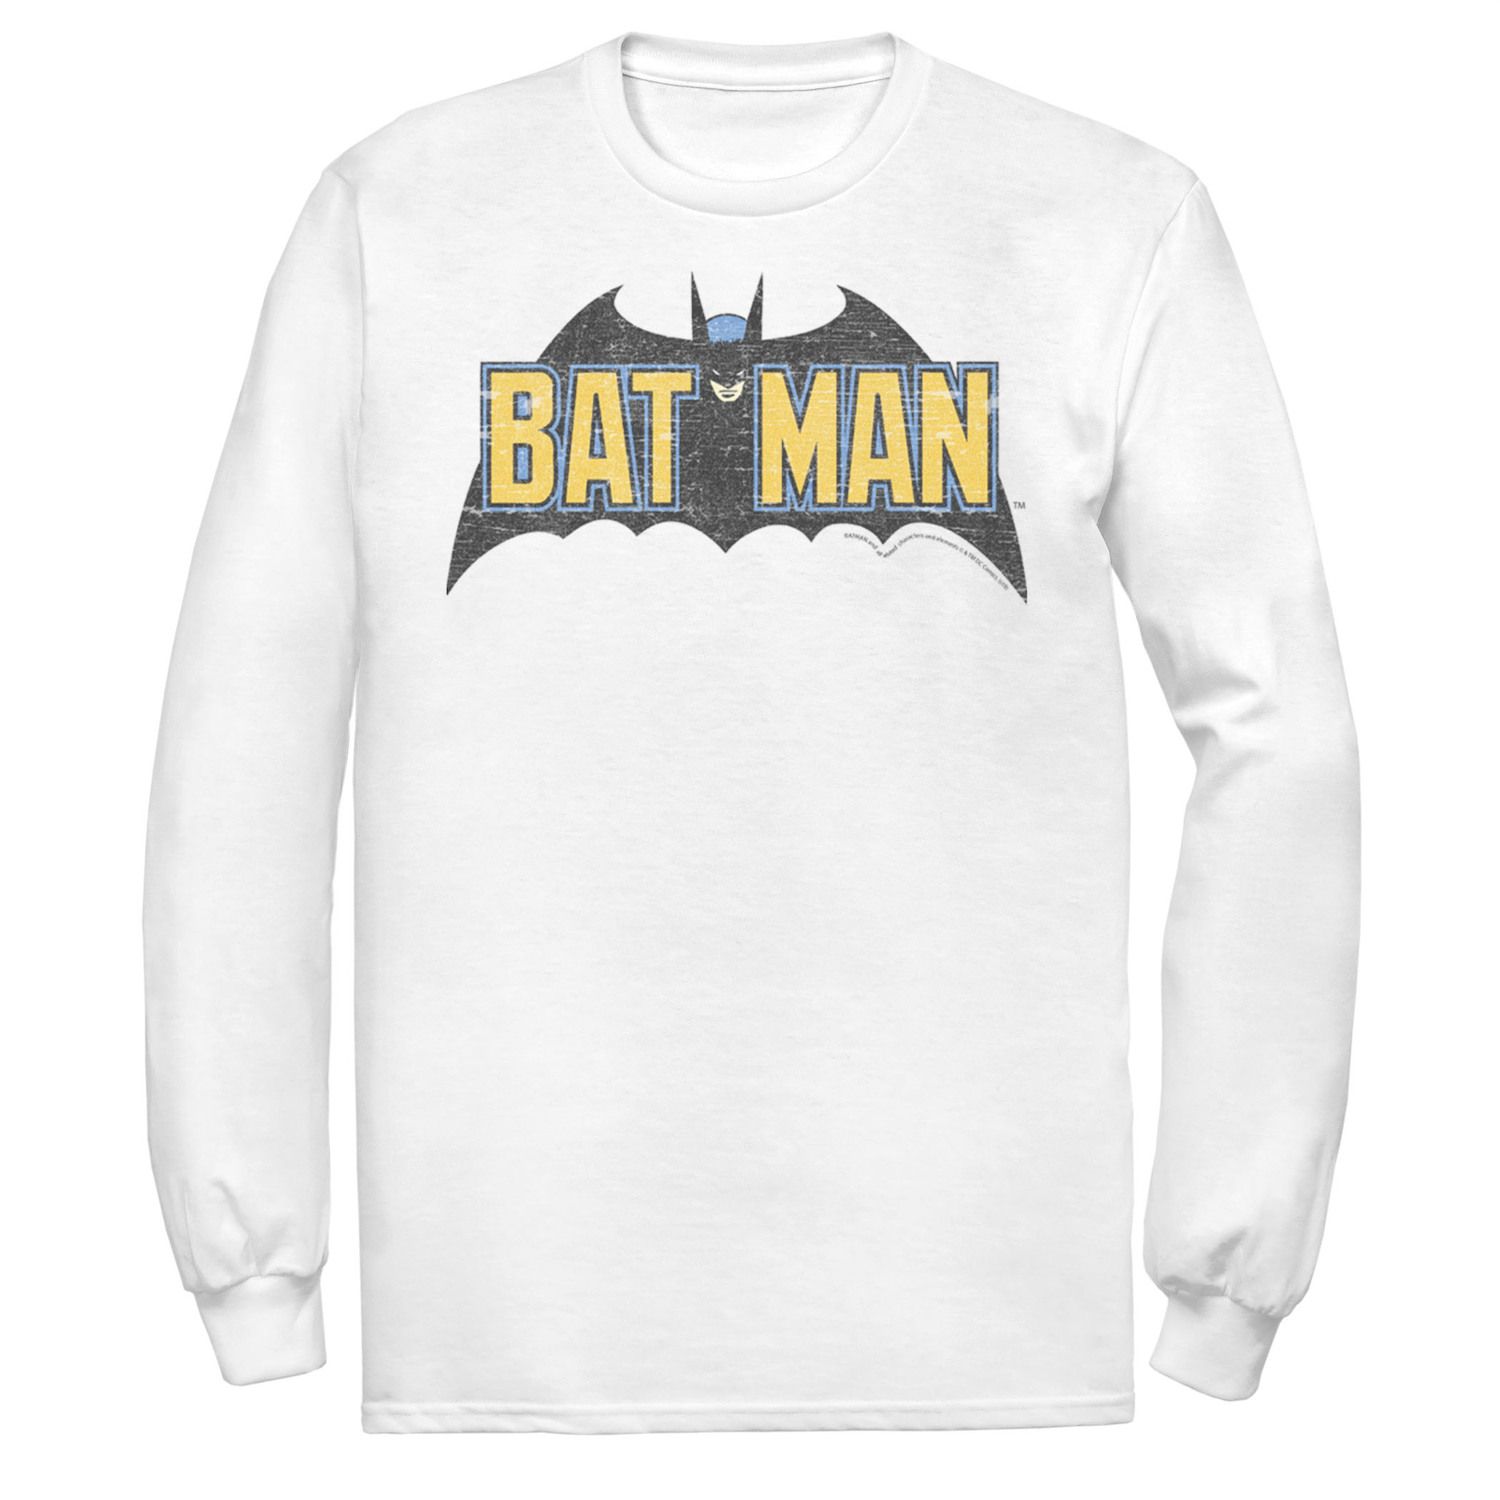 Мужская футболка с винтажным текстовым логотипом DC Comics Batman мужская футболка с текстовым логотипом хищные птицы dc comics